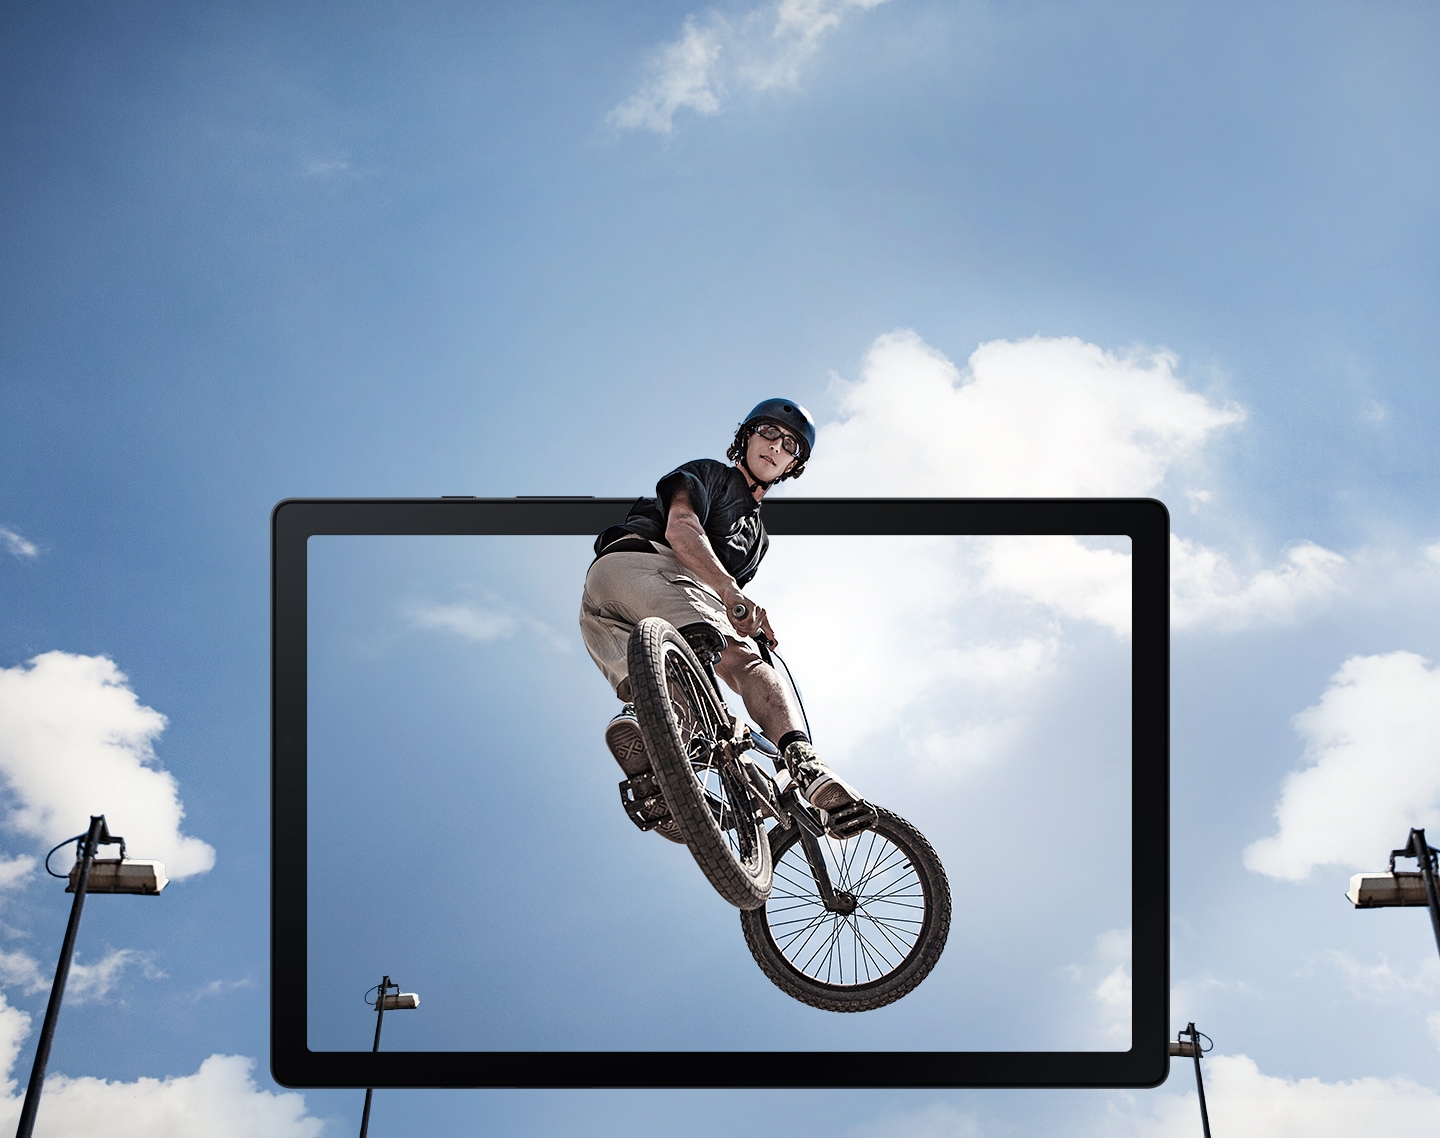 Man sieht einen Mann, der einen Sprung auf einem BMX-Rad in der Luft macht auf dem Tablet-Display.